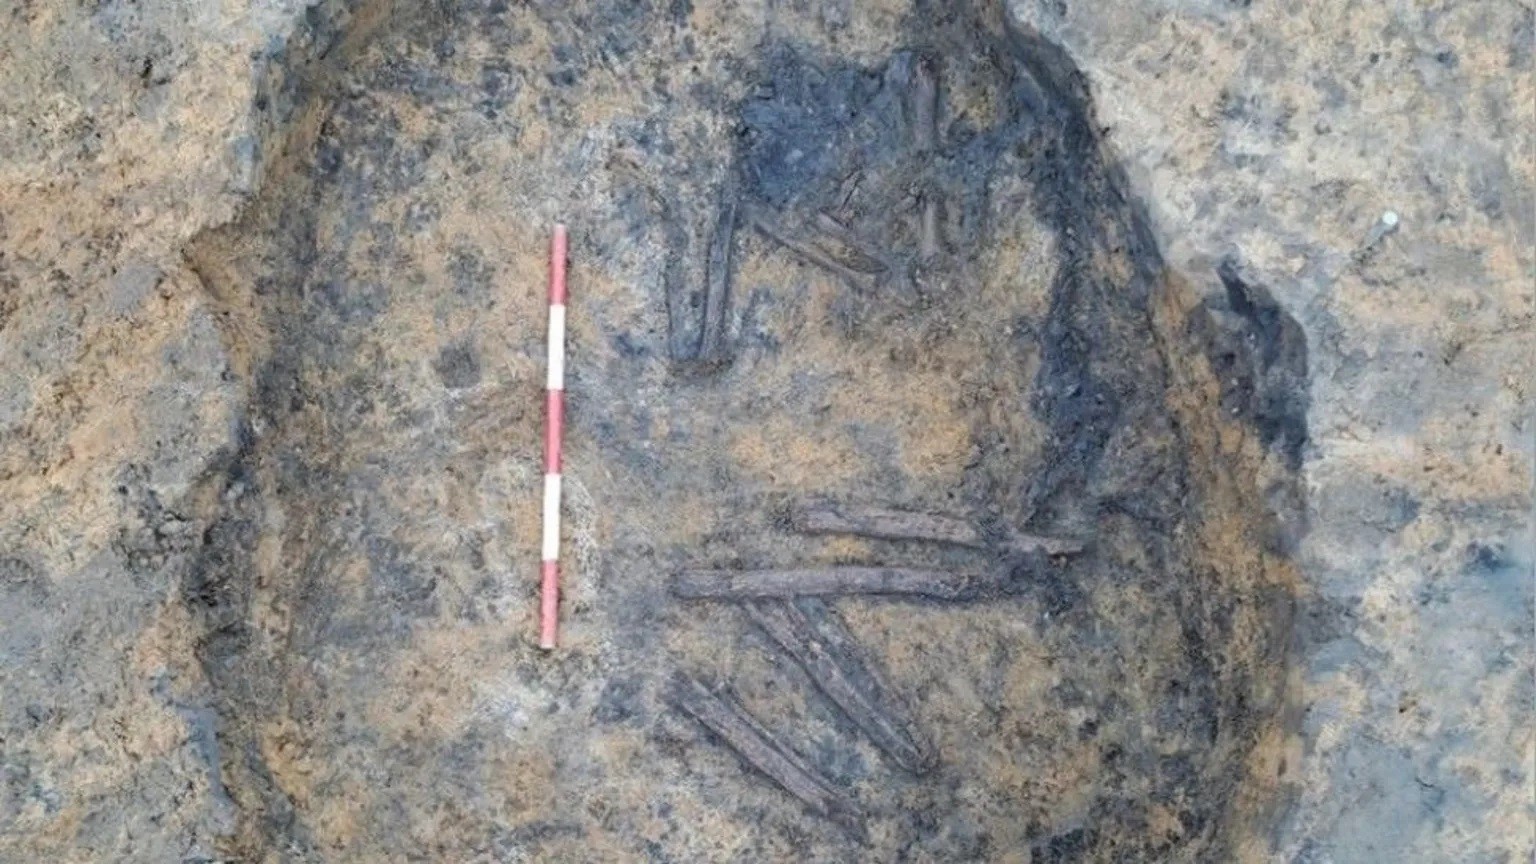 W kanalizacji odnaleźli wyjątkowo stare szczątki. Ludzkie kości stanowiły jedynie wstęp do kolejnych odkryć